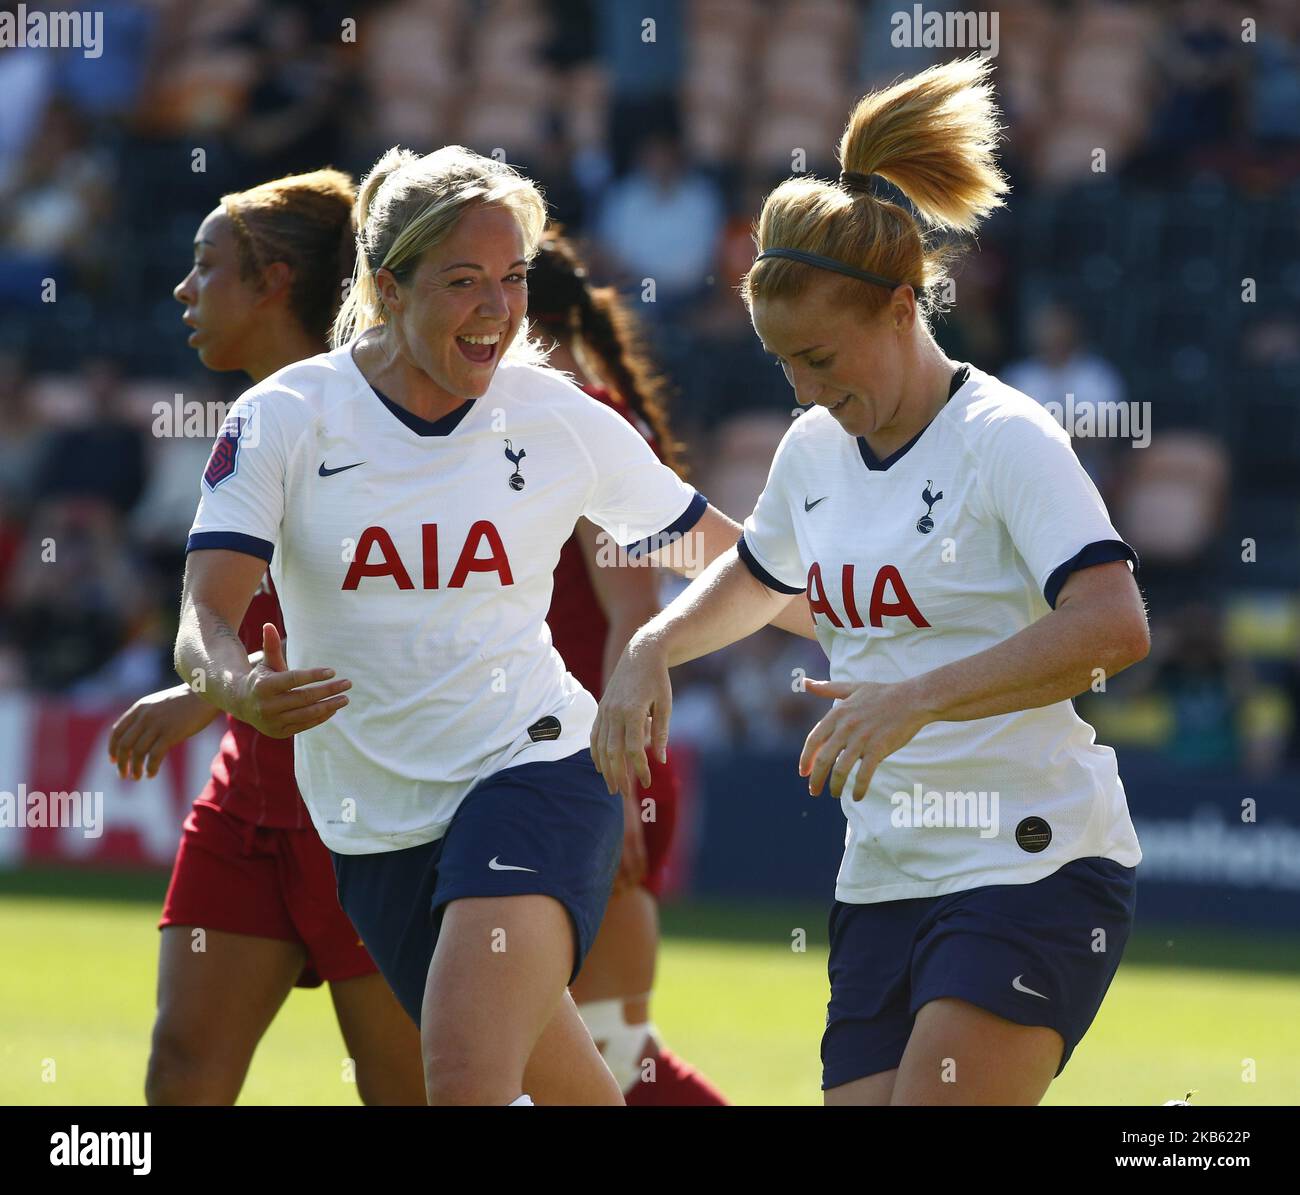 File:Tottenham Hotspur FC Women v Liverpool FC Women, 15 September